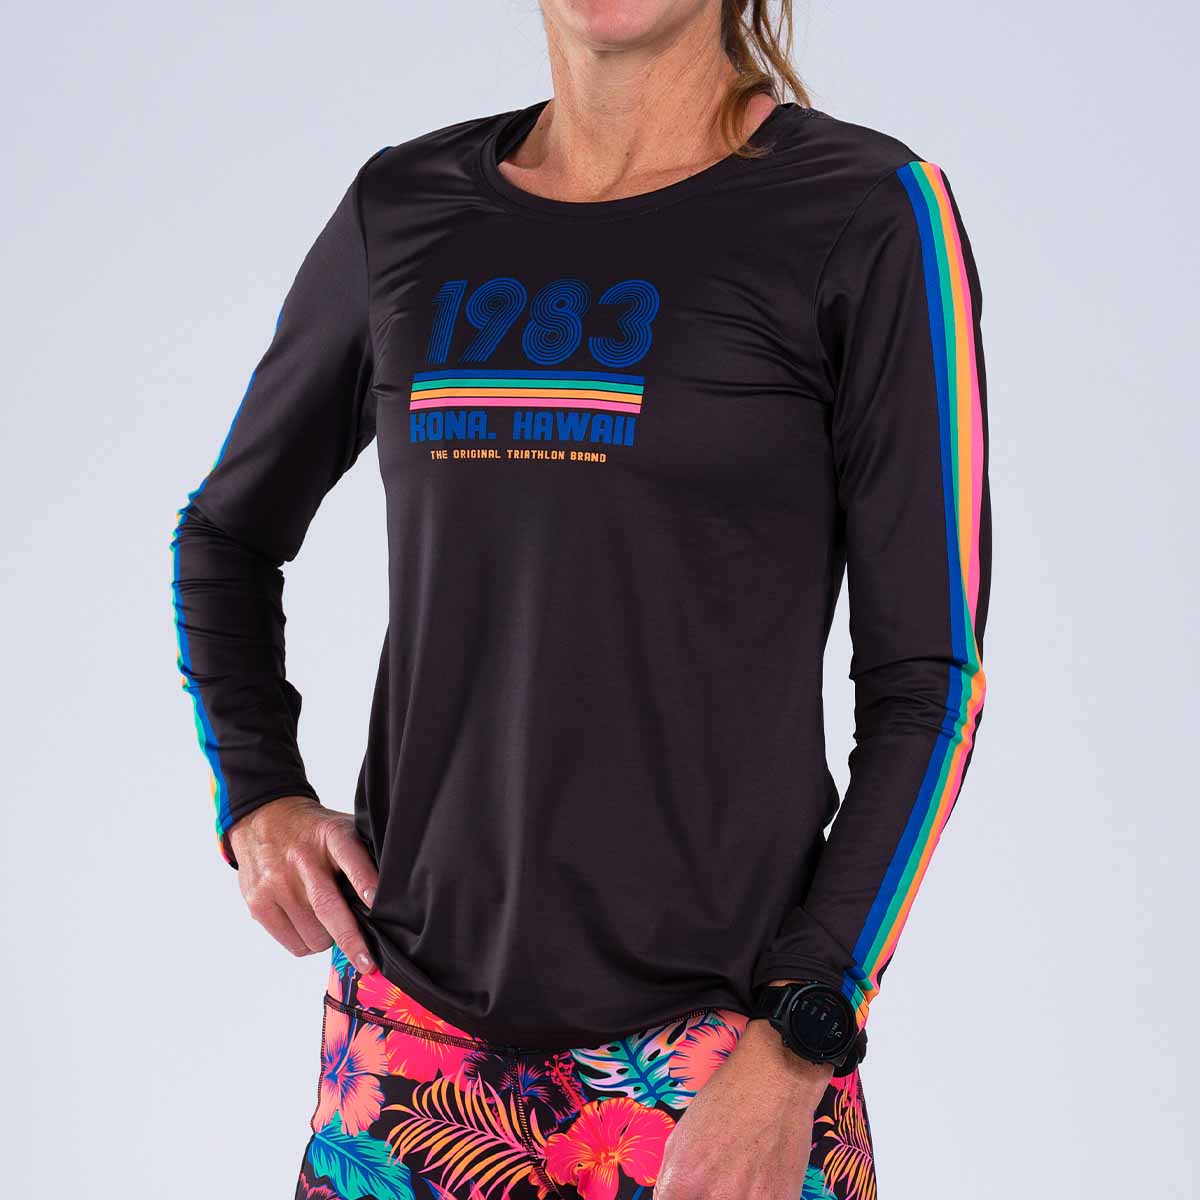 Zoot Sports RUN TEE Women's LTD Run LS Tee - 40 Years